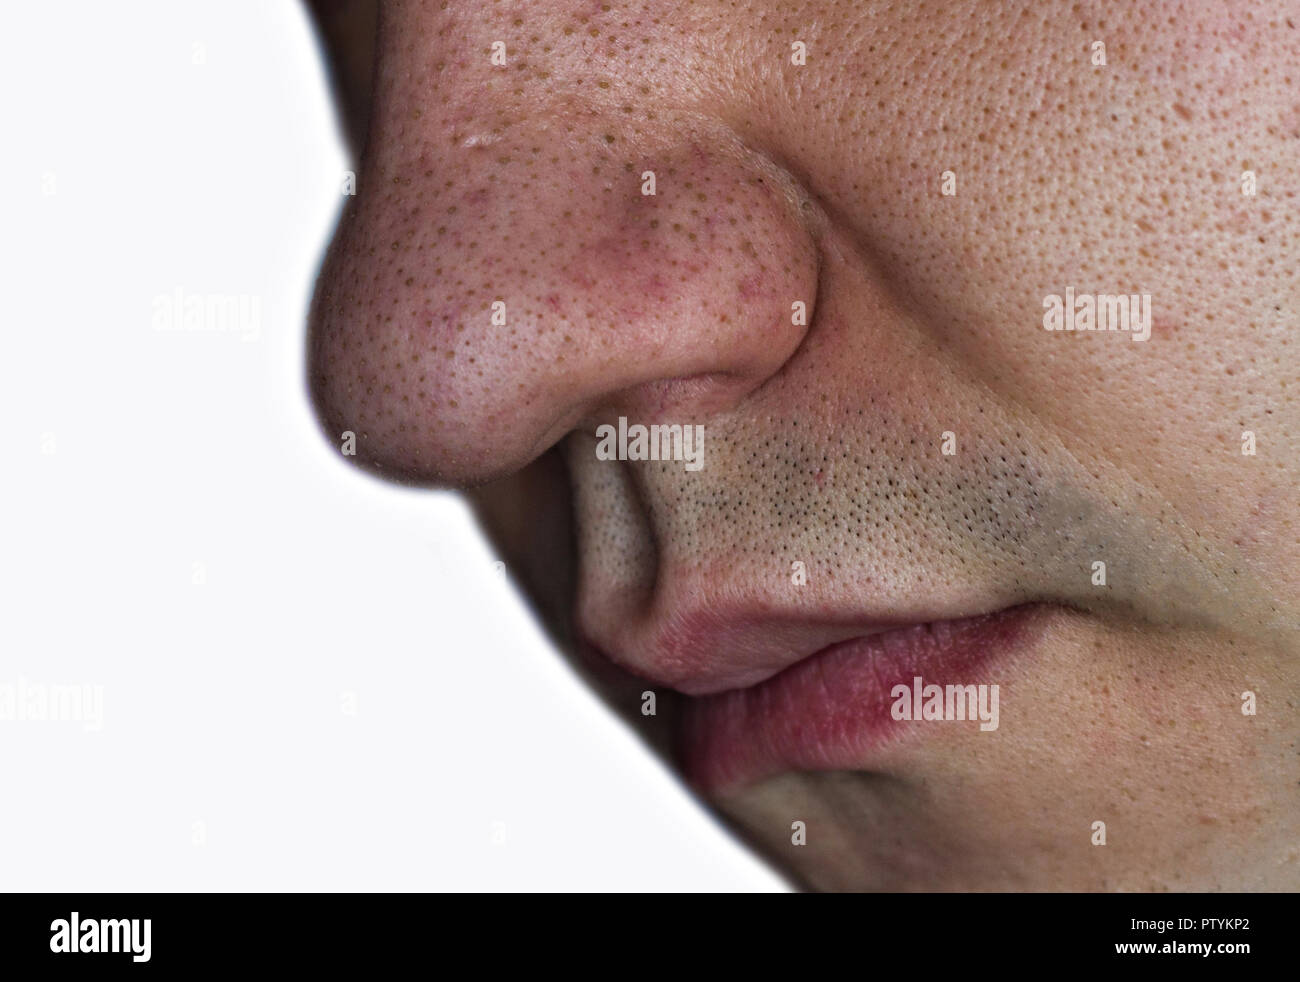 Schwarze Punkte, Mitesser, auf das Gesicht des Mannes, close-up  Stockfotografie - Alamy